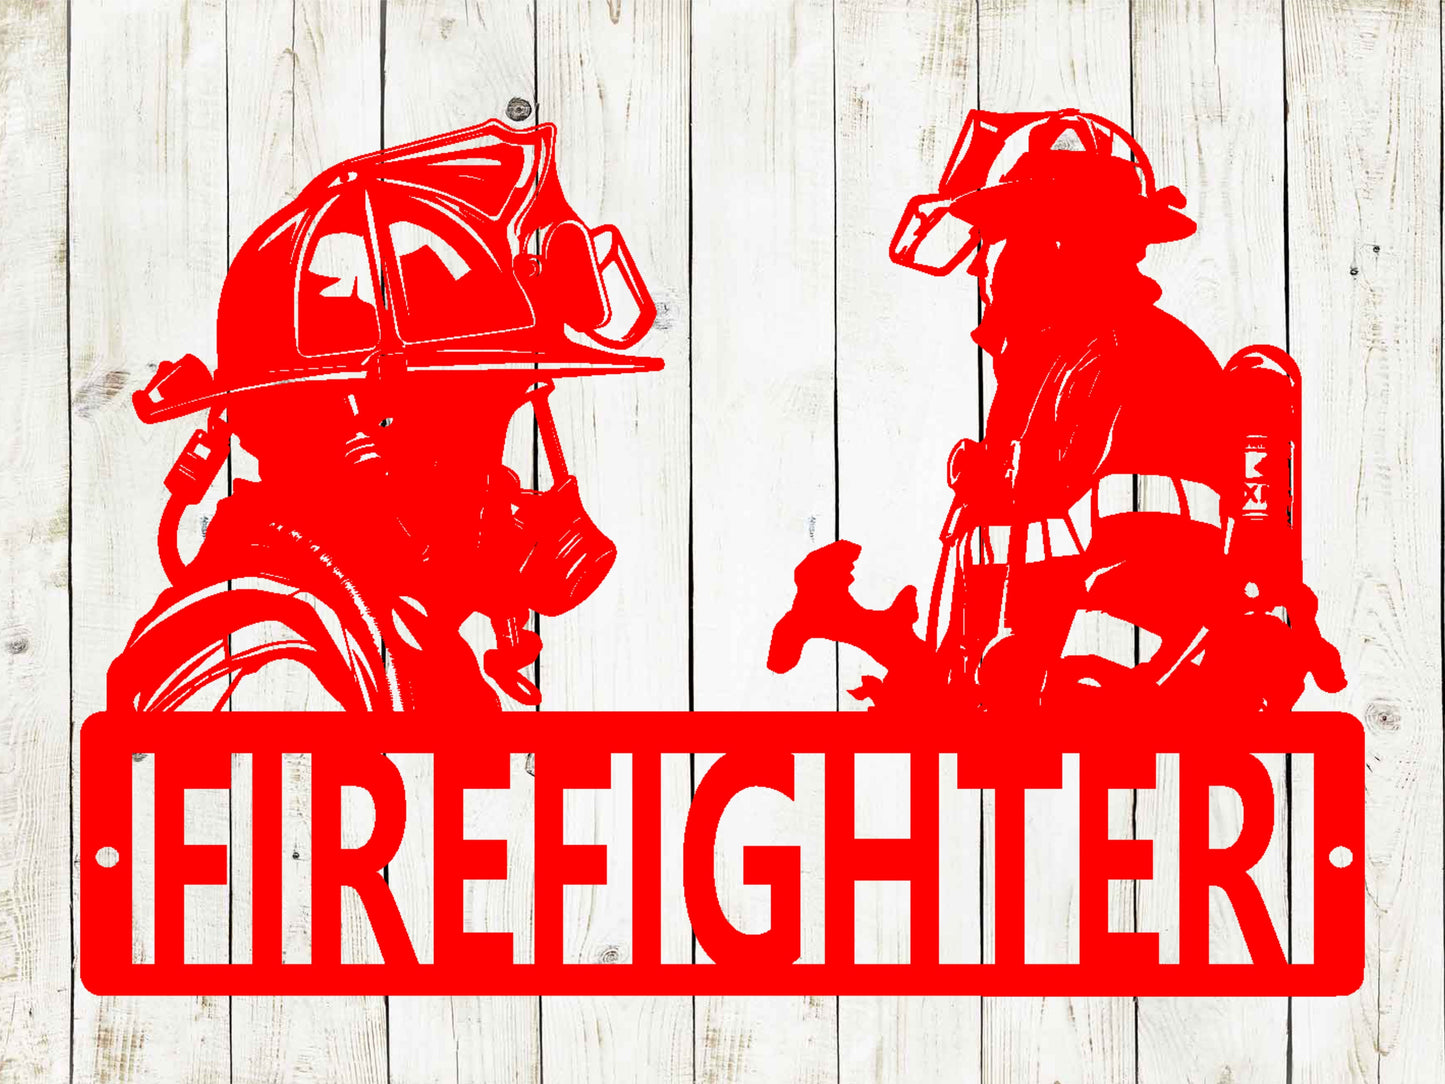 Firefighter Custom Name Metal Sign, Fire Engine, Firefighter Sign, First Responder, Kids Room Decor, Man Cave, Firemen, Firewoman, Fire